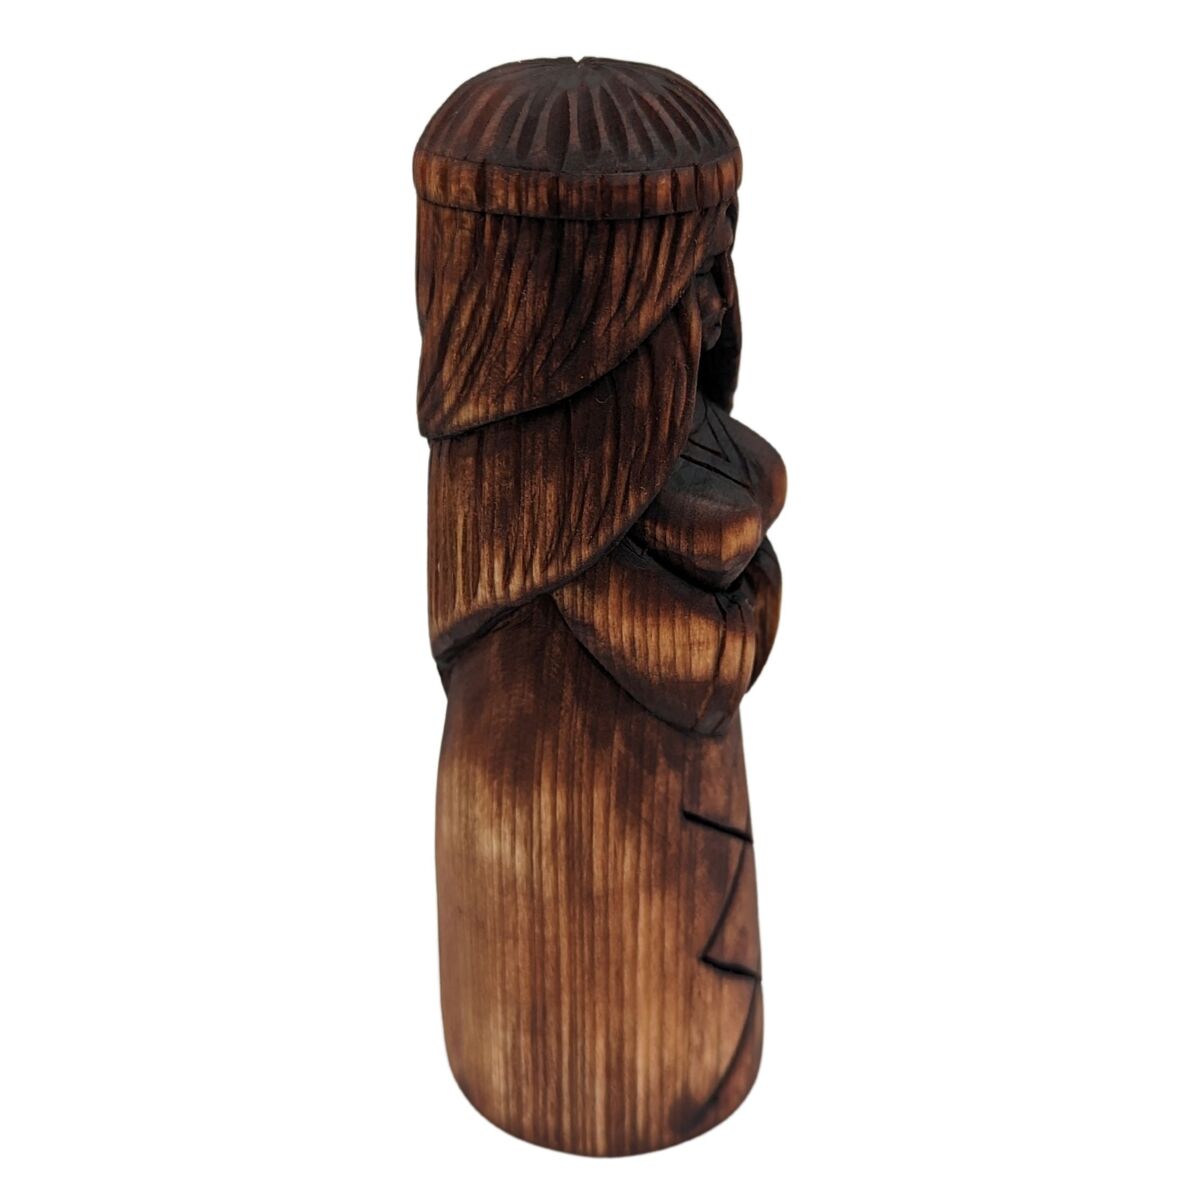 Freya wooden figurine